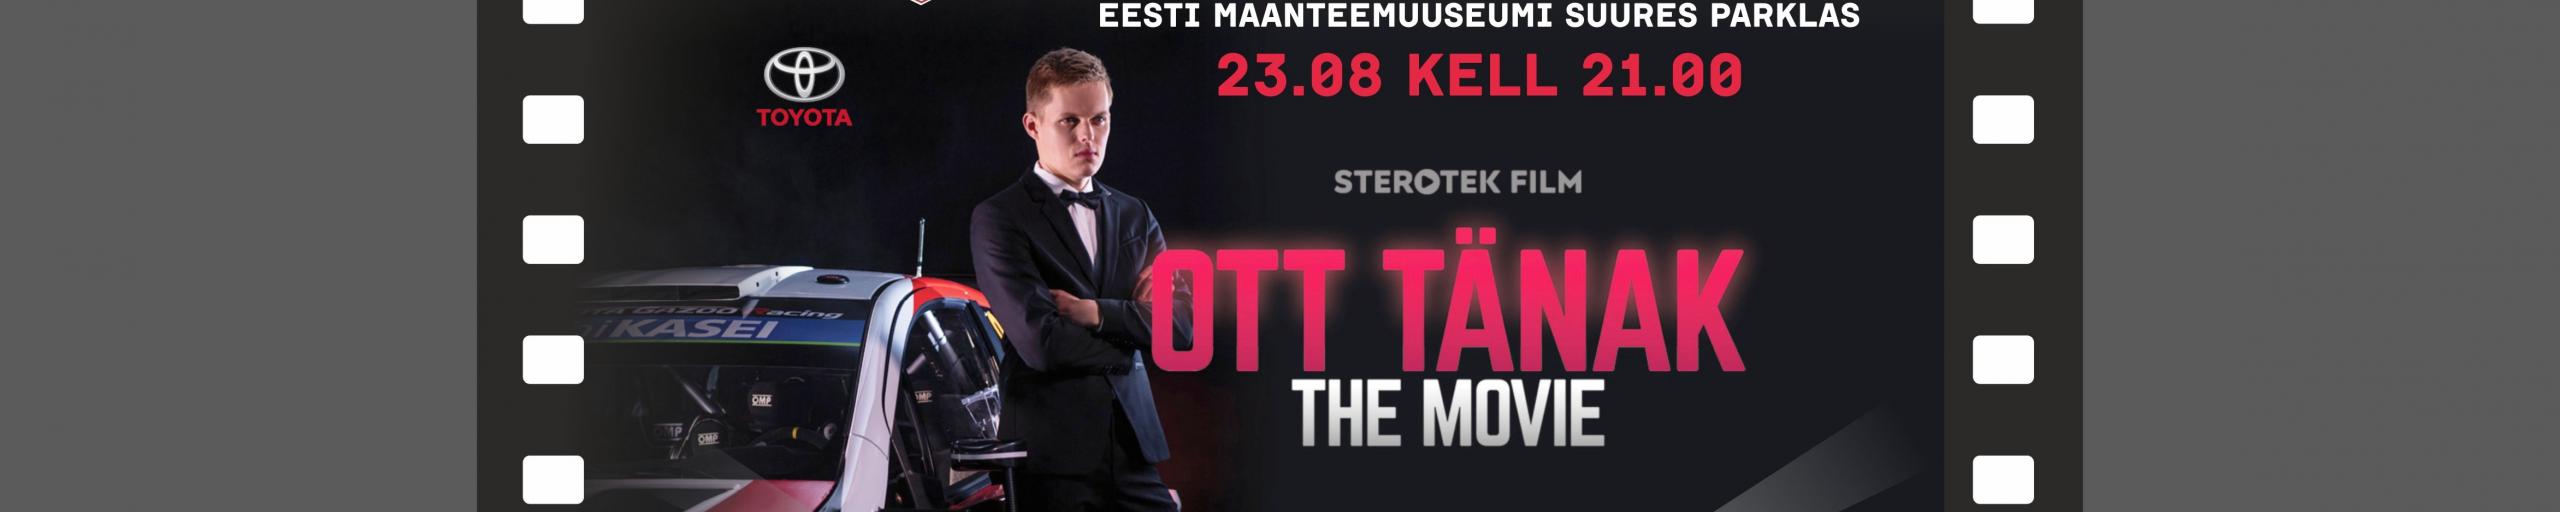 autokino Ott Tänak eesti maanteemuuseum